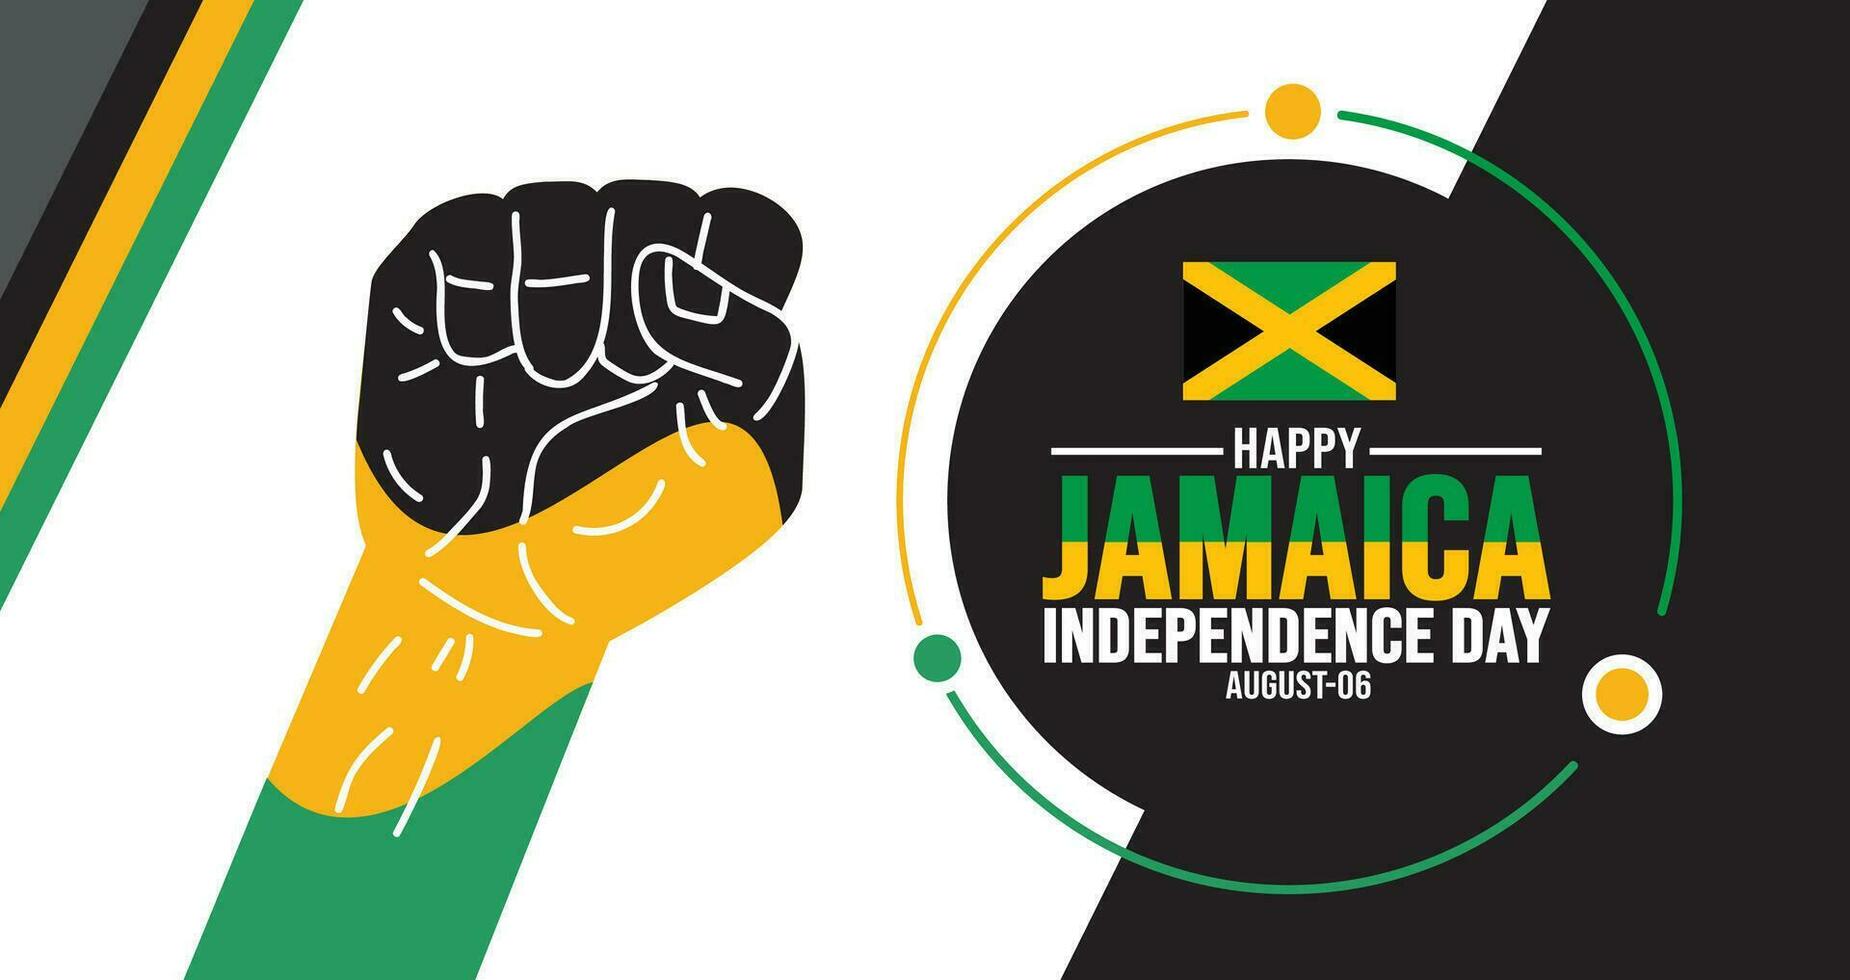 Jamaica gelukkig onafhankelijkheid dag achtergrond sjabloon. vakantie concept. achtergrond, banier, aanplakbiljet, kaart, en poster ontwerp sjabloon met tekst opschrift en standaard- kleur. vector illustratie.